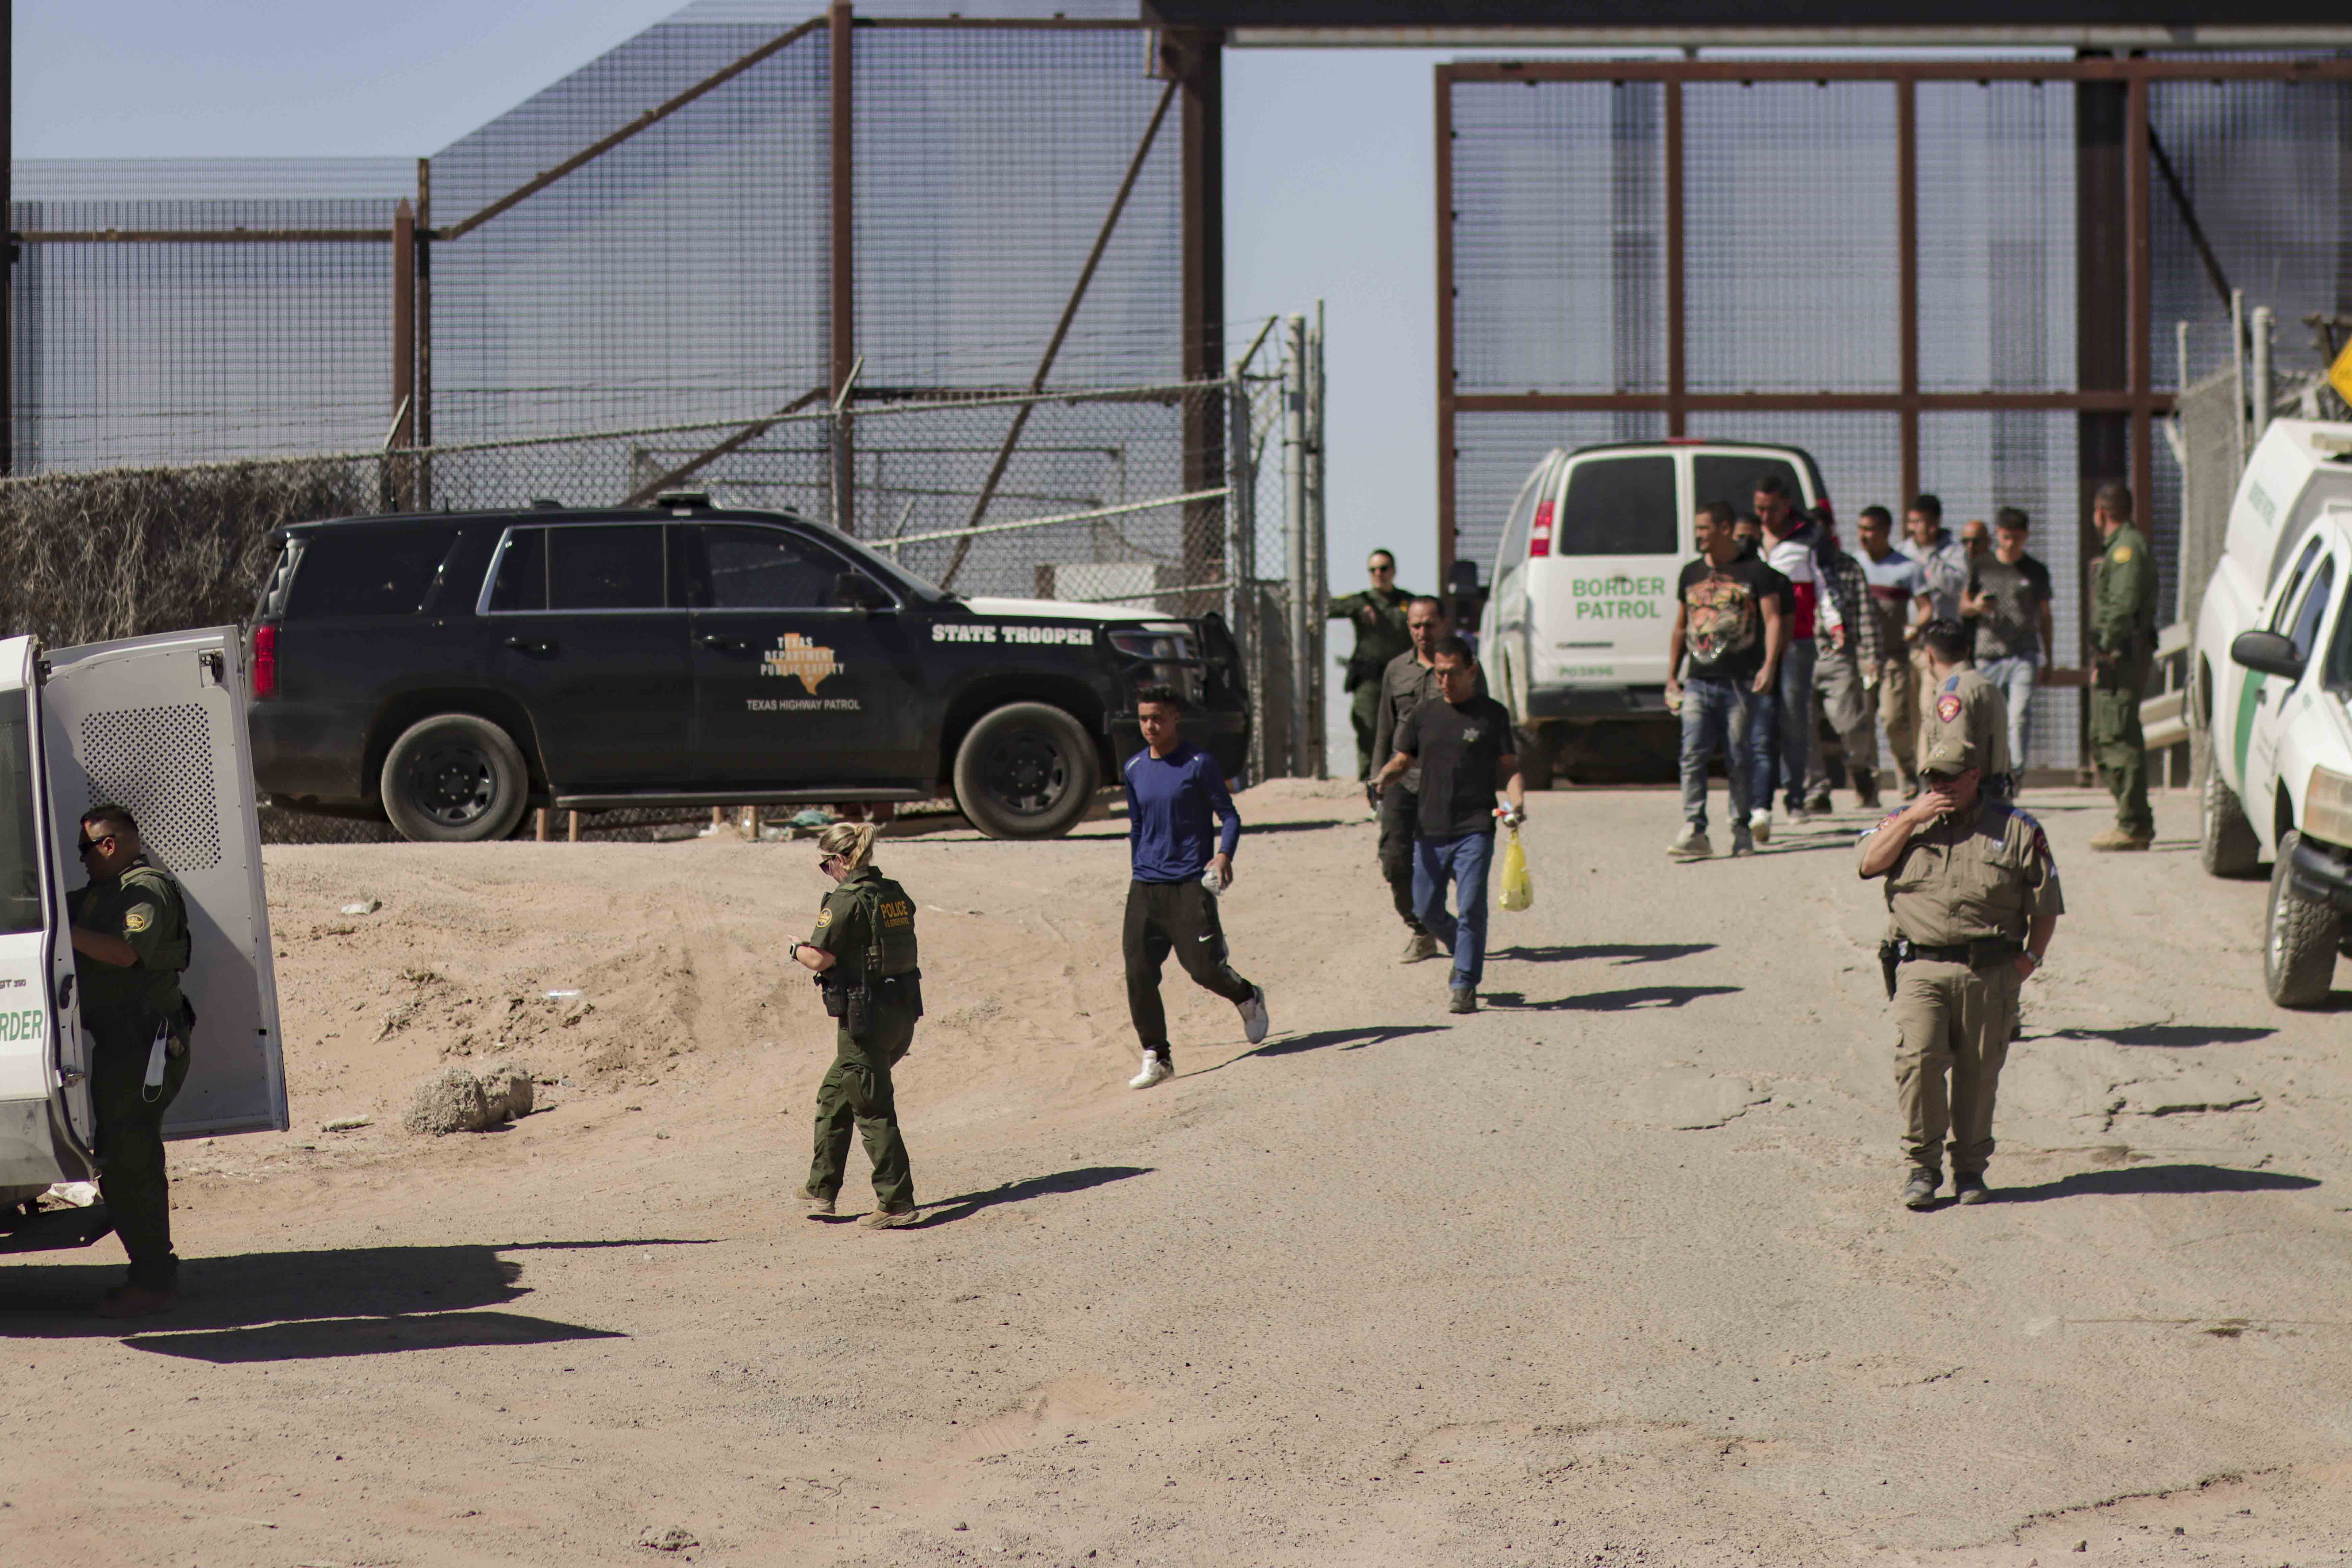 Migrantes detenidos son llevados por miembros de la Patrulla Fronteriza estadounidense a un vehículo, junto al muro fronterizo en El Paso, Texas. (Foto Prensa Libre: EFE)